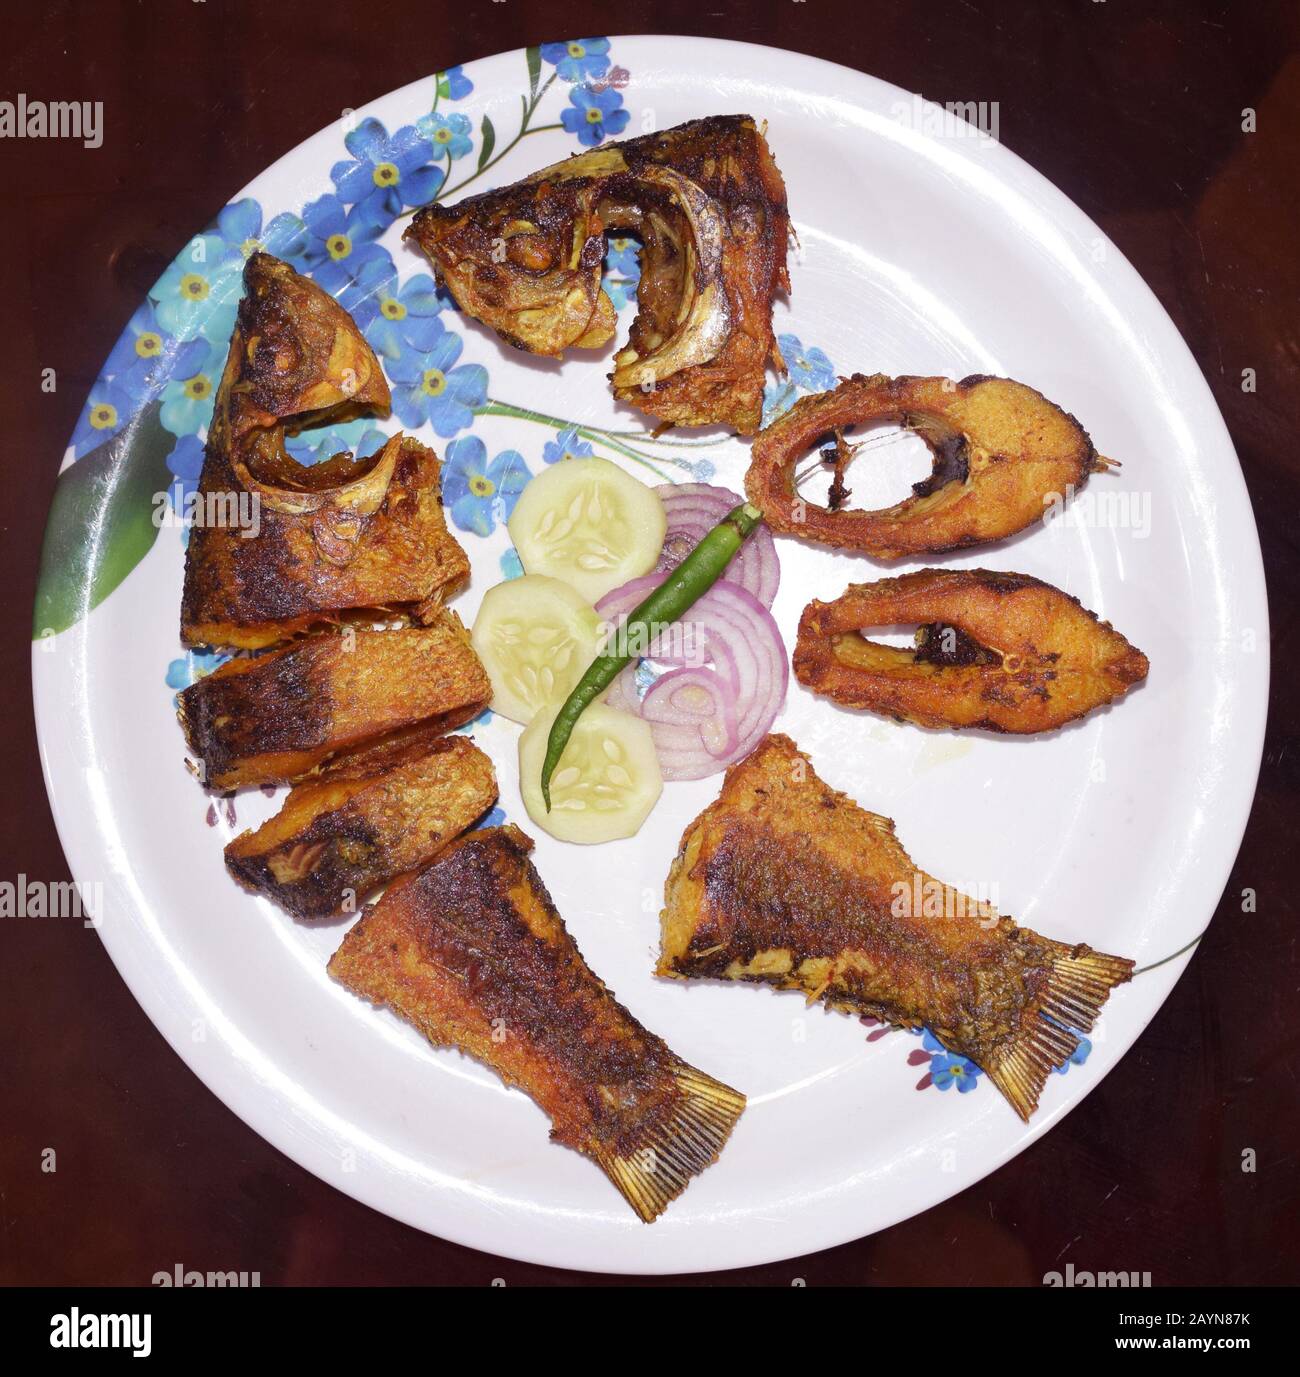 Bengalische Küche Rohu Fischbraten auch Rui Maach Bhaja genannt in bengalischer Sprache. Bengalisches Gericht, indisches Essen, indisches Gericht, indische Küche Stockfoto